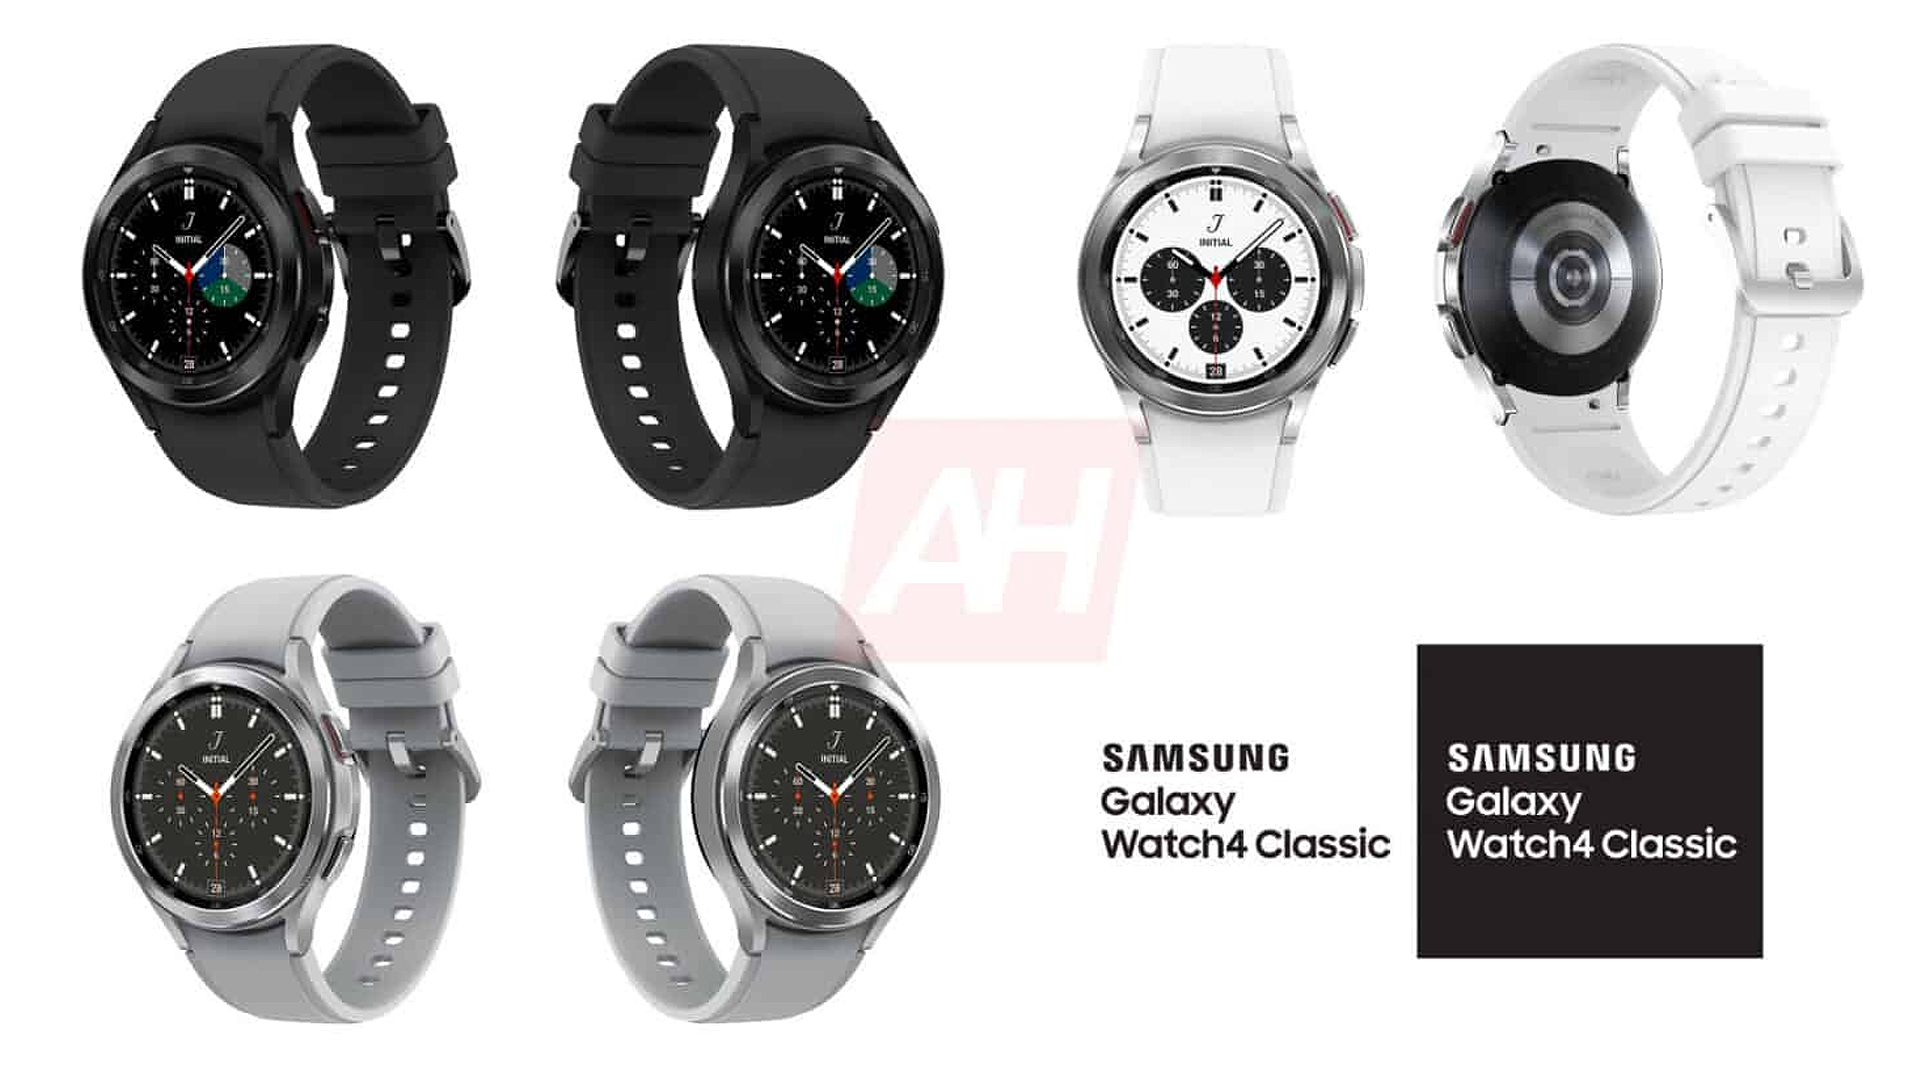 Galaxy Watch 4 bị rò rỉ hiển thị với các màu đen, trắng và bạc.